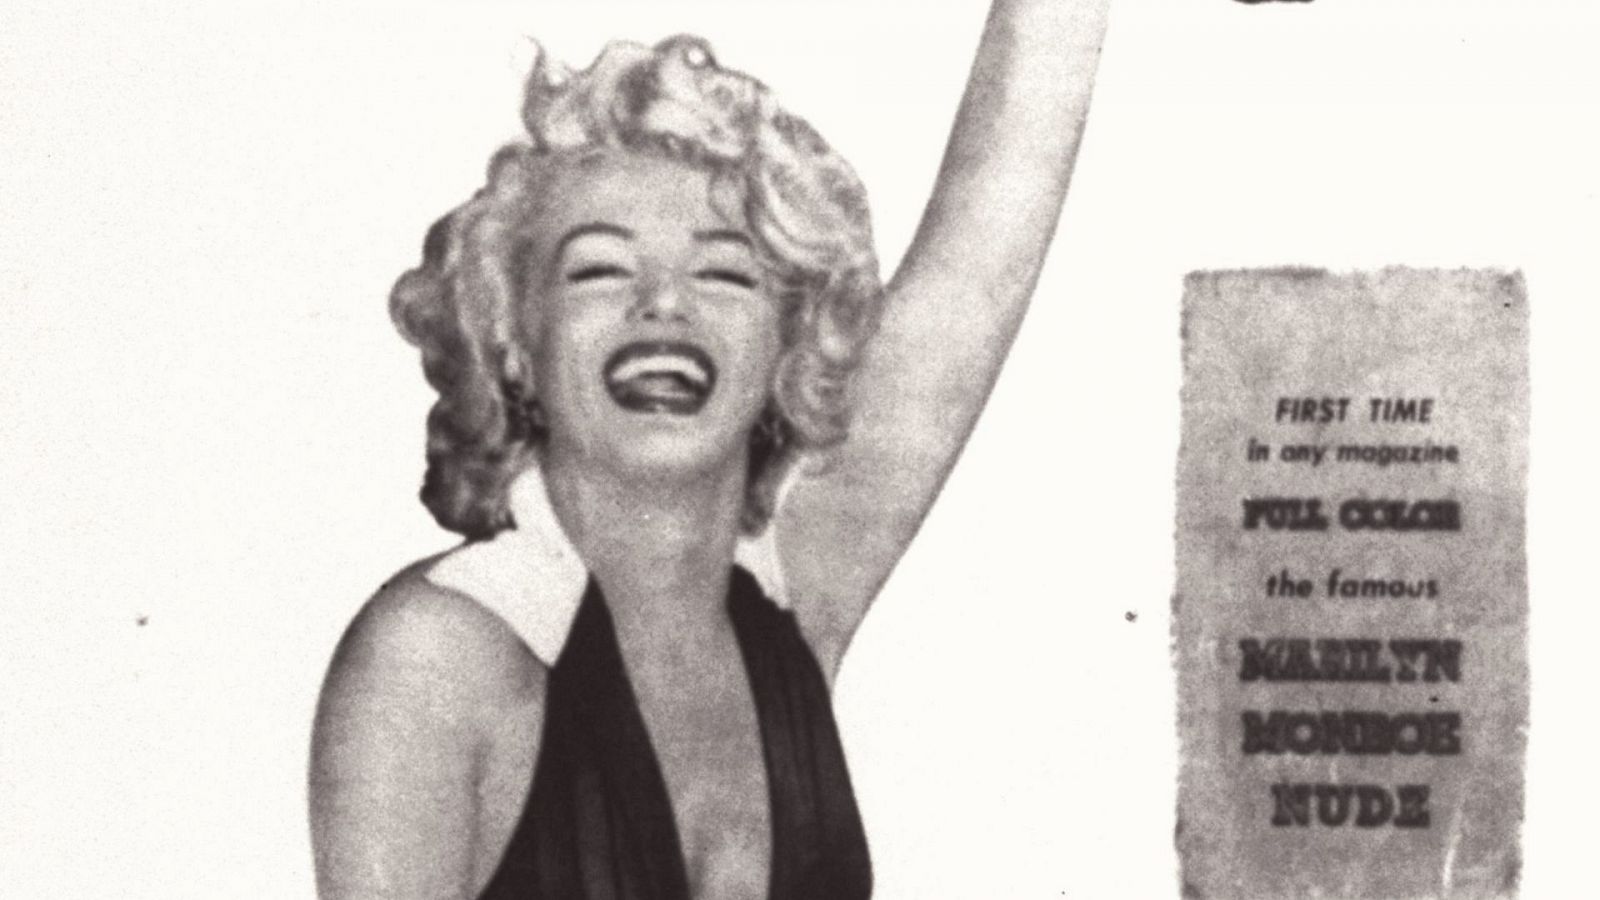 La noche en vela - Mujeres: Marilyn Monroe, el mito sexual de los años 50 - Escuchar ahora